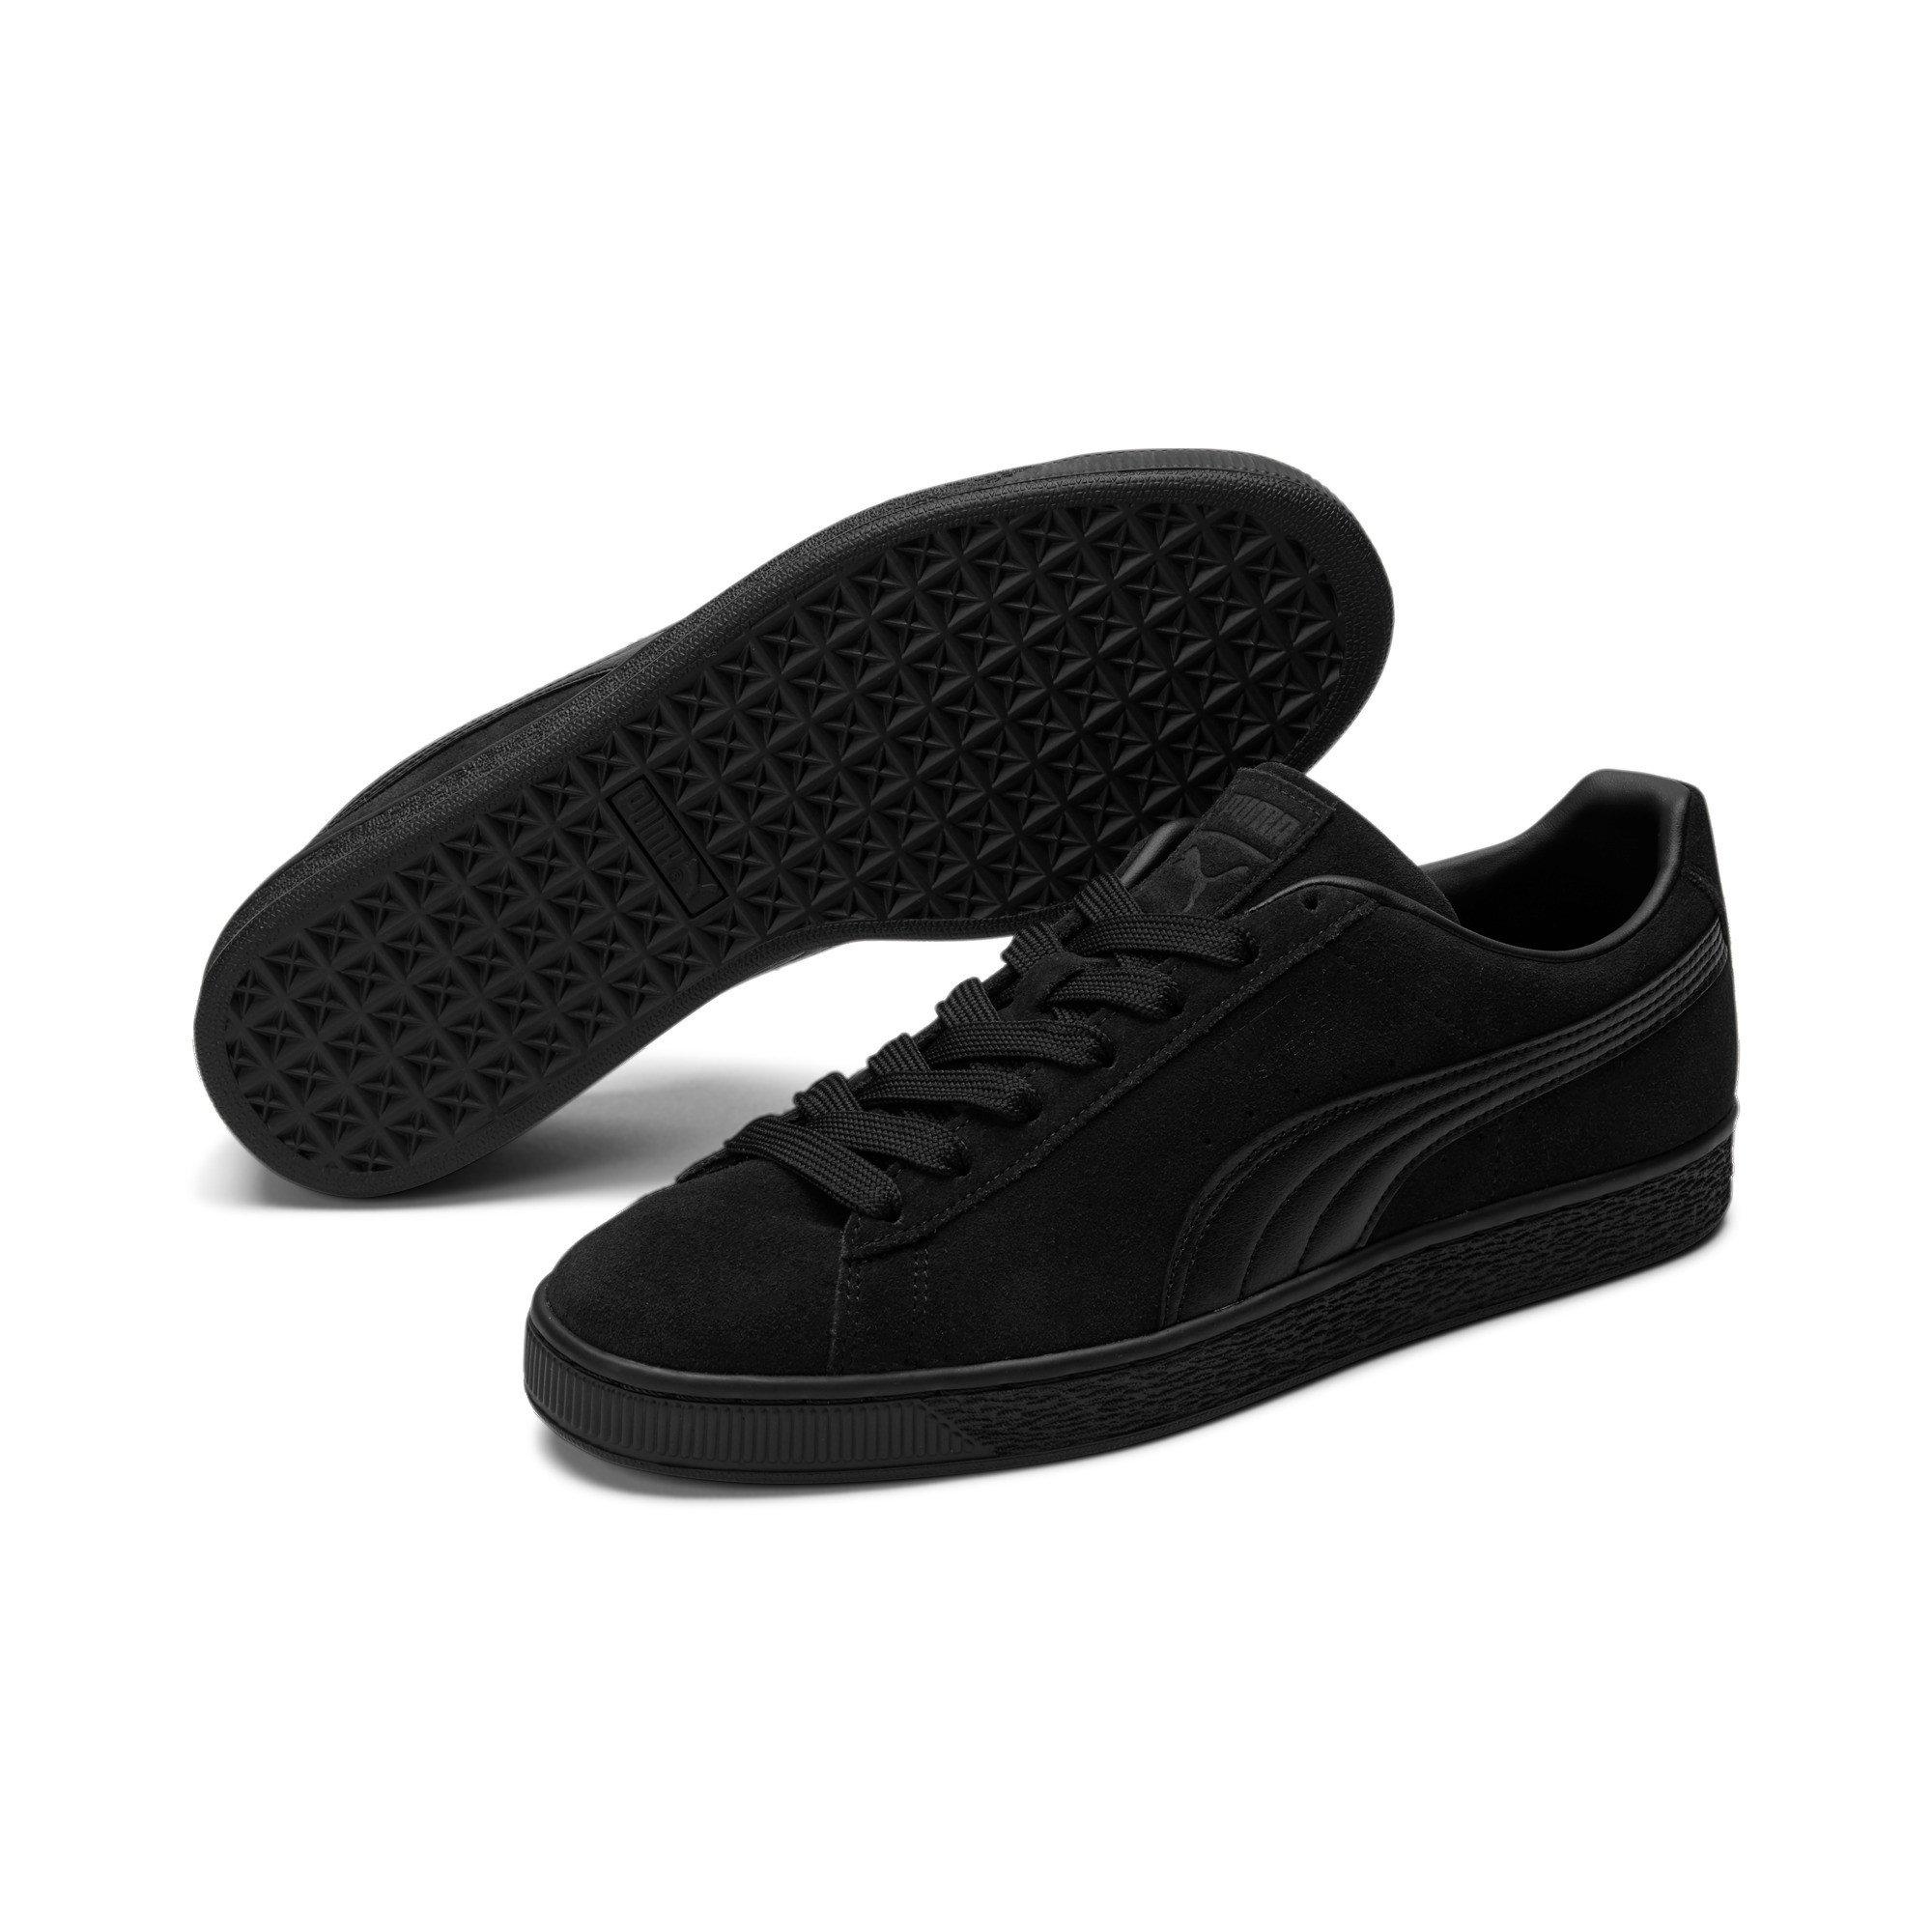 PUMA Suede Classic "Black" Shoe